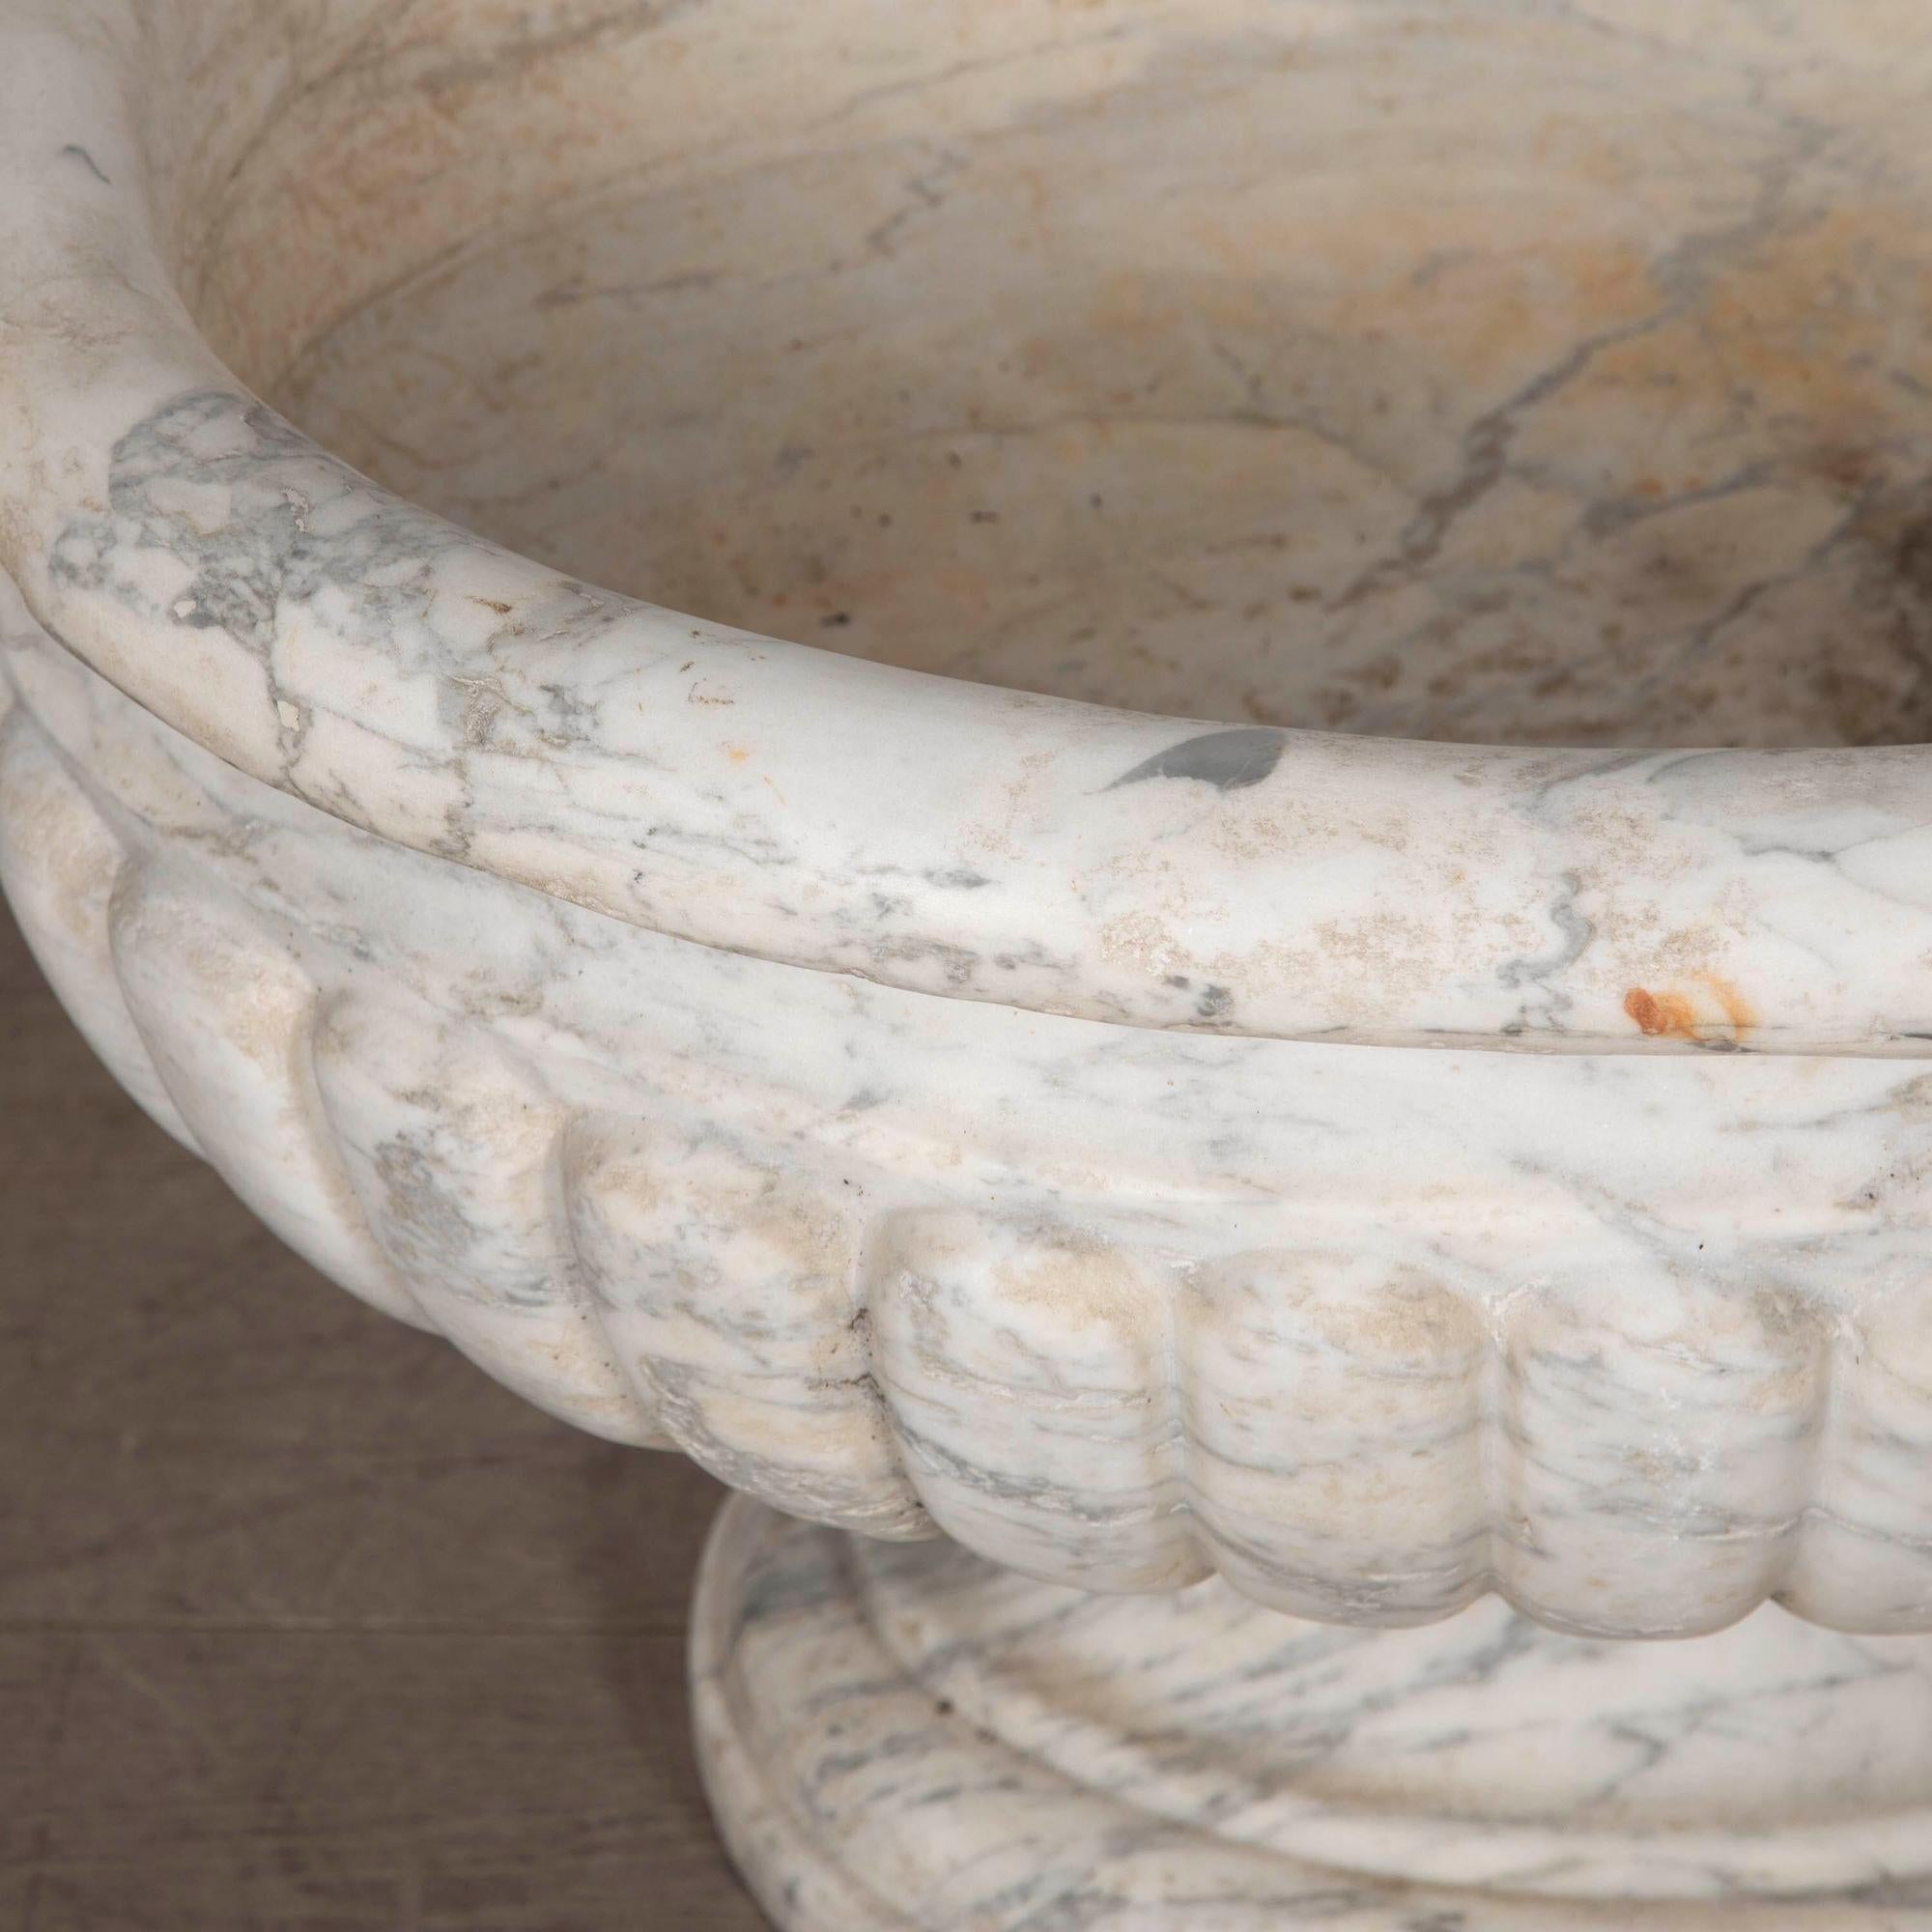 Glorieuse citerne en marbre de Carrare du début du 19e siècle, de grandes proportions.
La coupe ovale à godrons, audacieusement sculptée, repose sur un socle finement détaillé.
L'ensemble est magnifiquement tactile et poli par l'usure du temps, avec